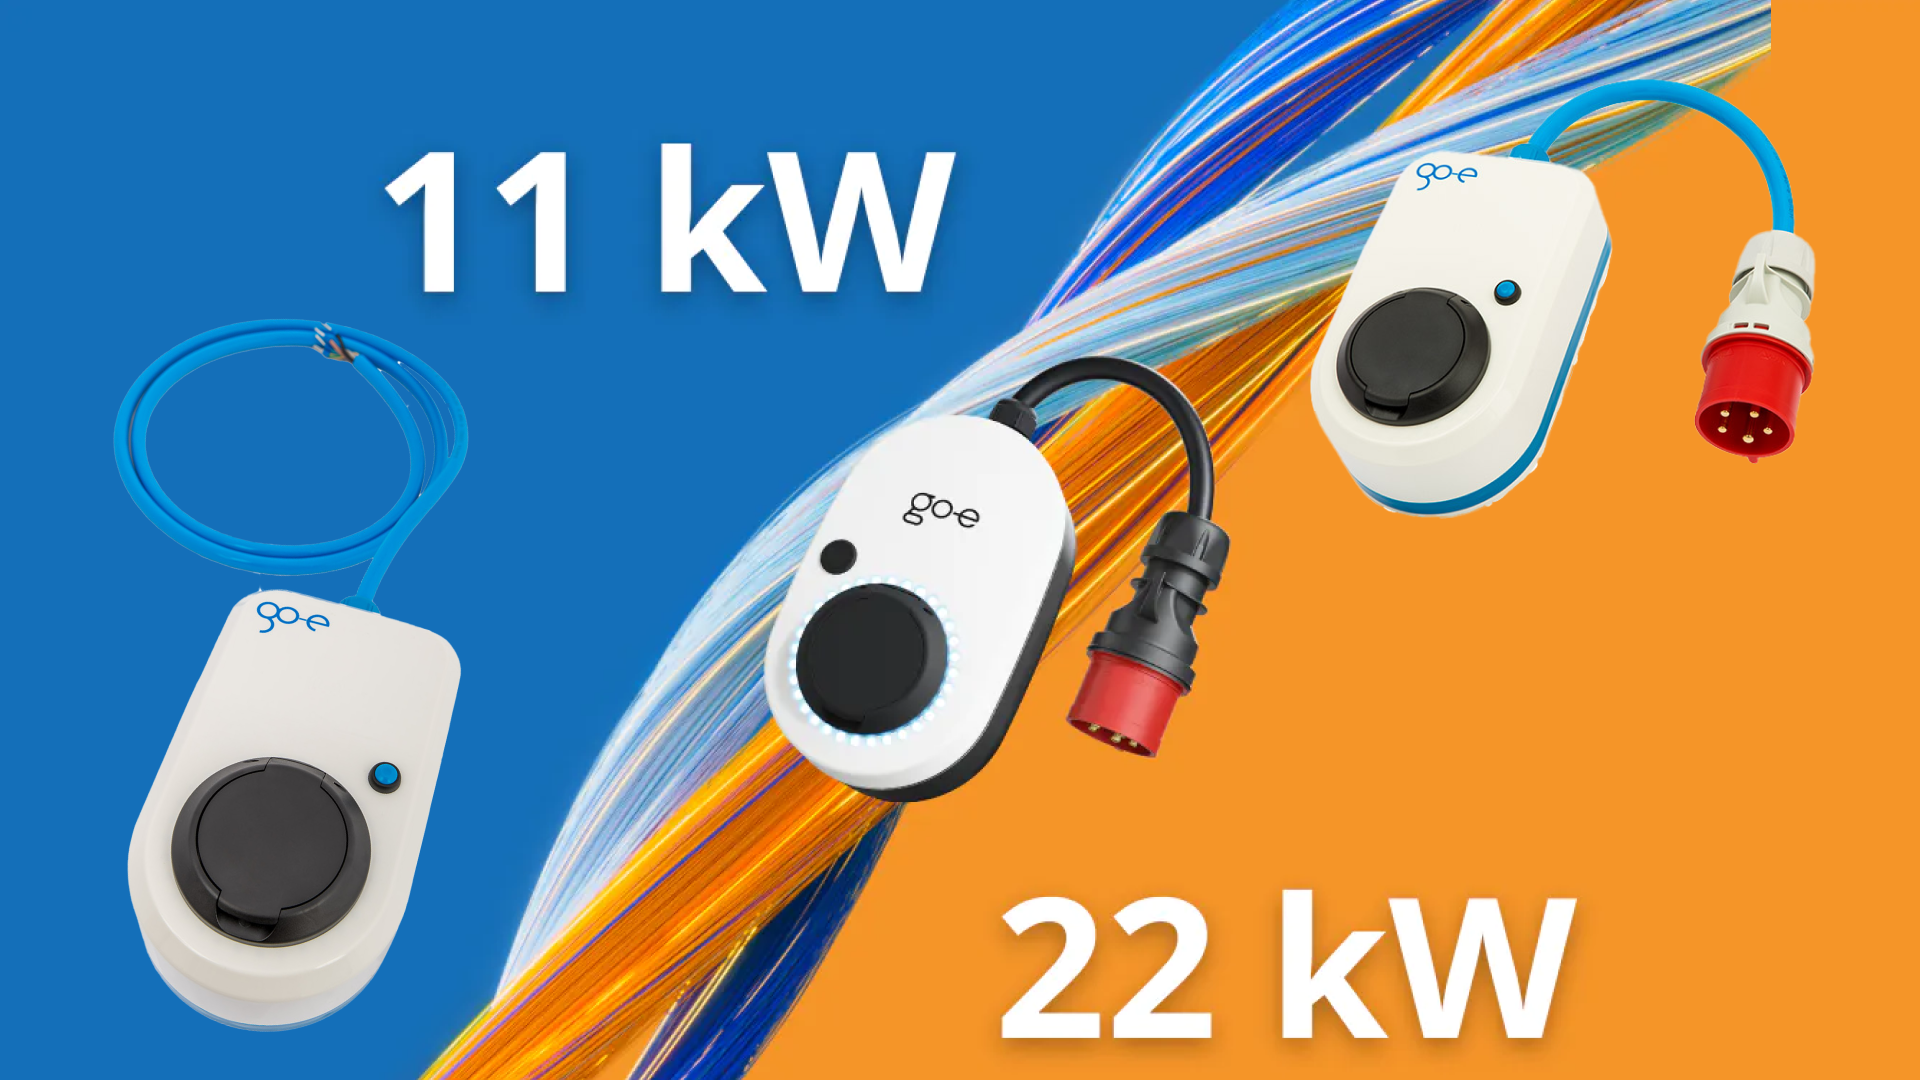 Şarj İstasyonu 11 kW veya 22 kW : Eviniz veya İşyeriniz İçin Hangisini Almalısınız?